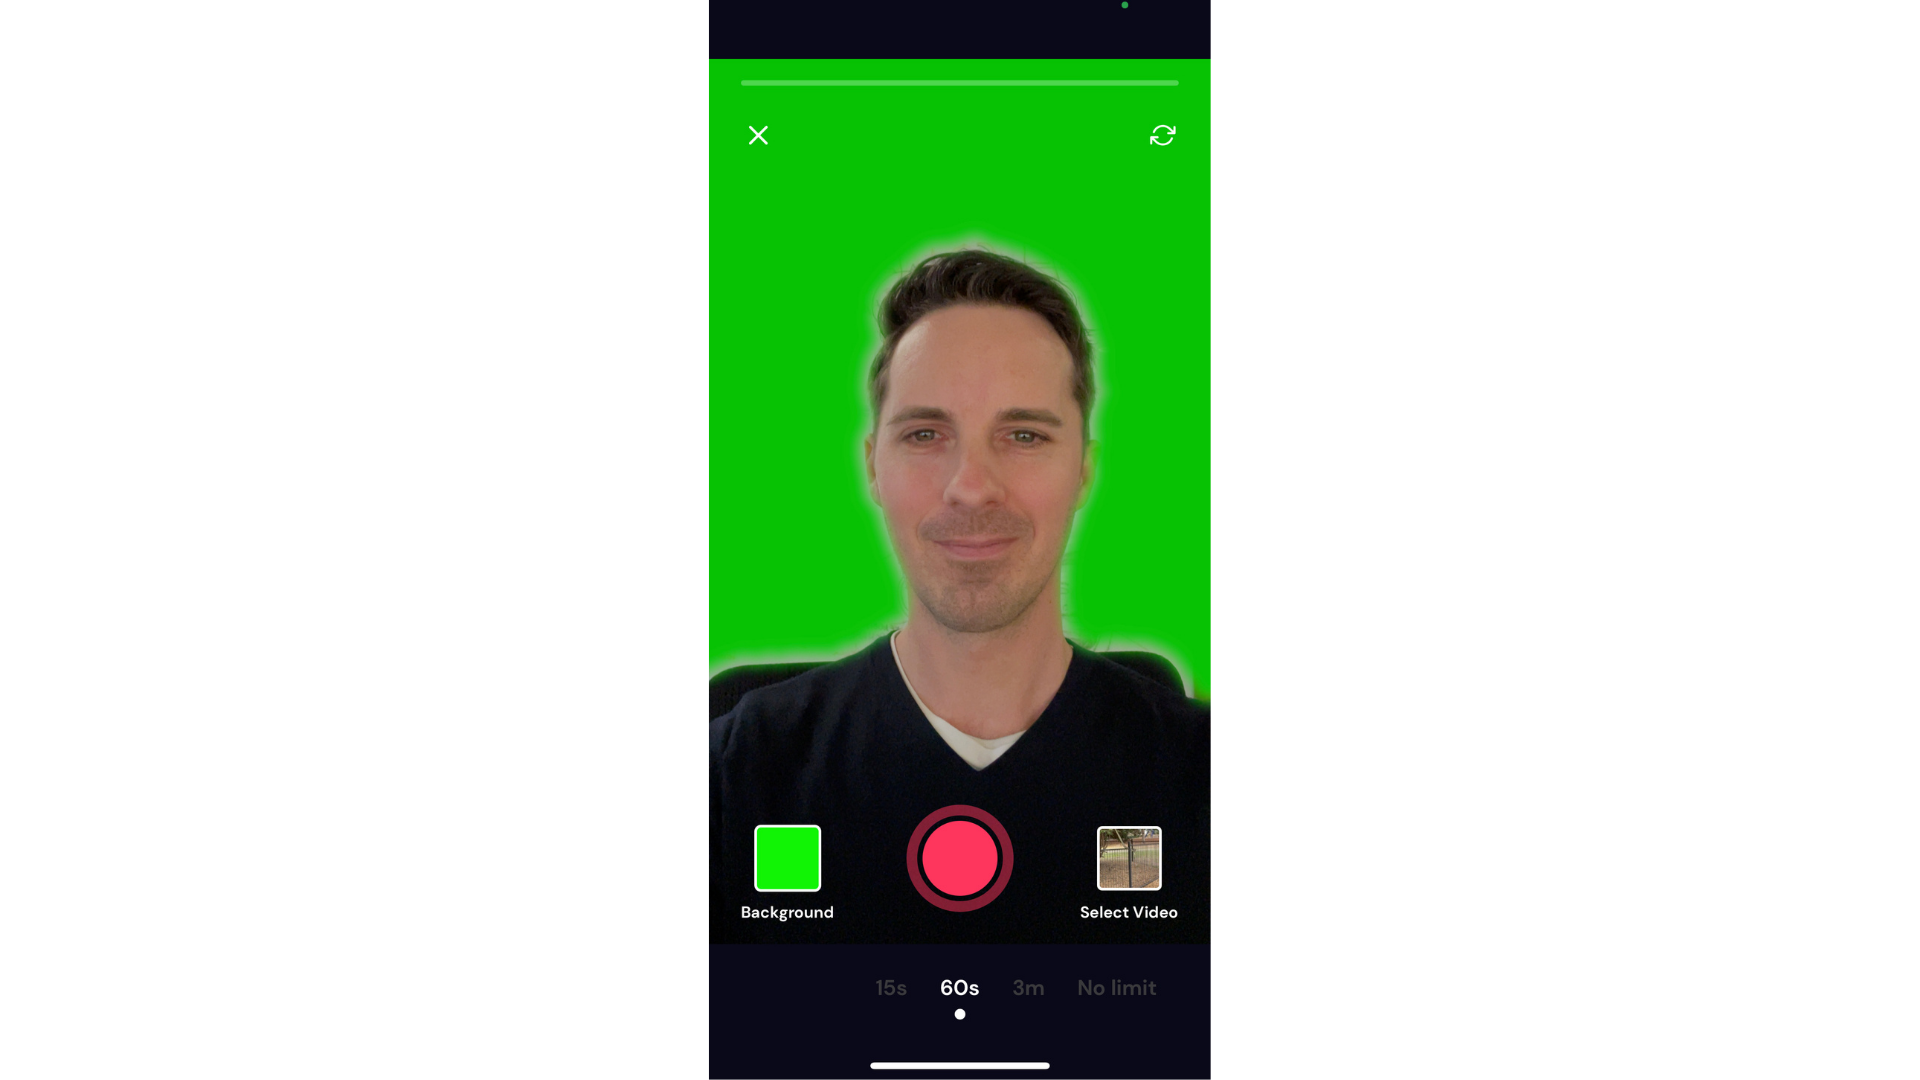 ผู้ใช้ที่ใช้เอฟเฟ็กต์หน้าจอสีเขียวบนแอป Cliphcamp iOS